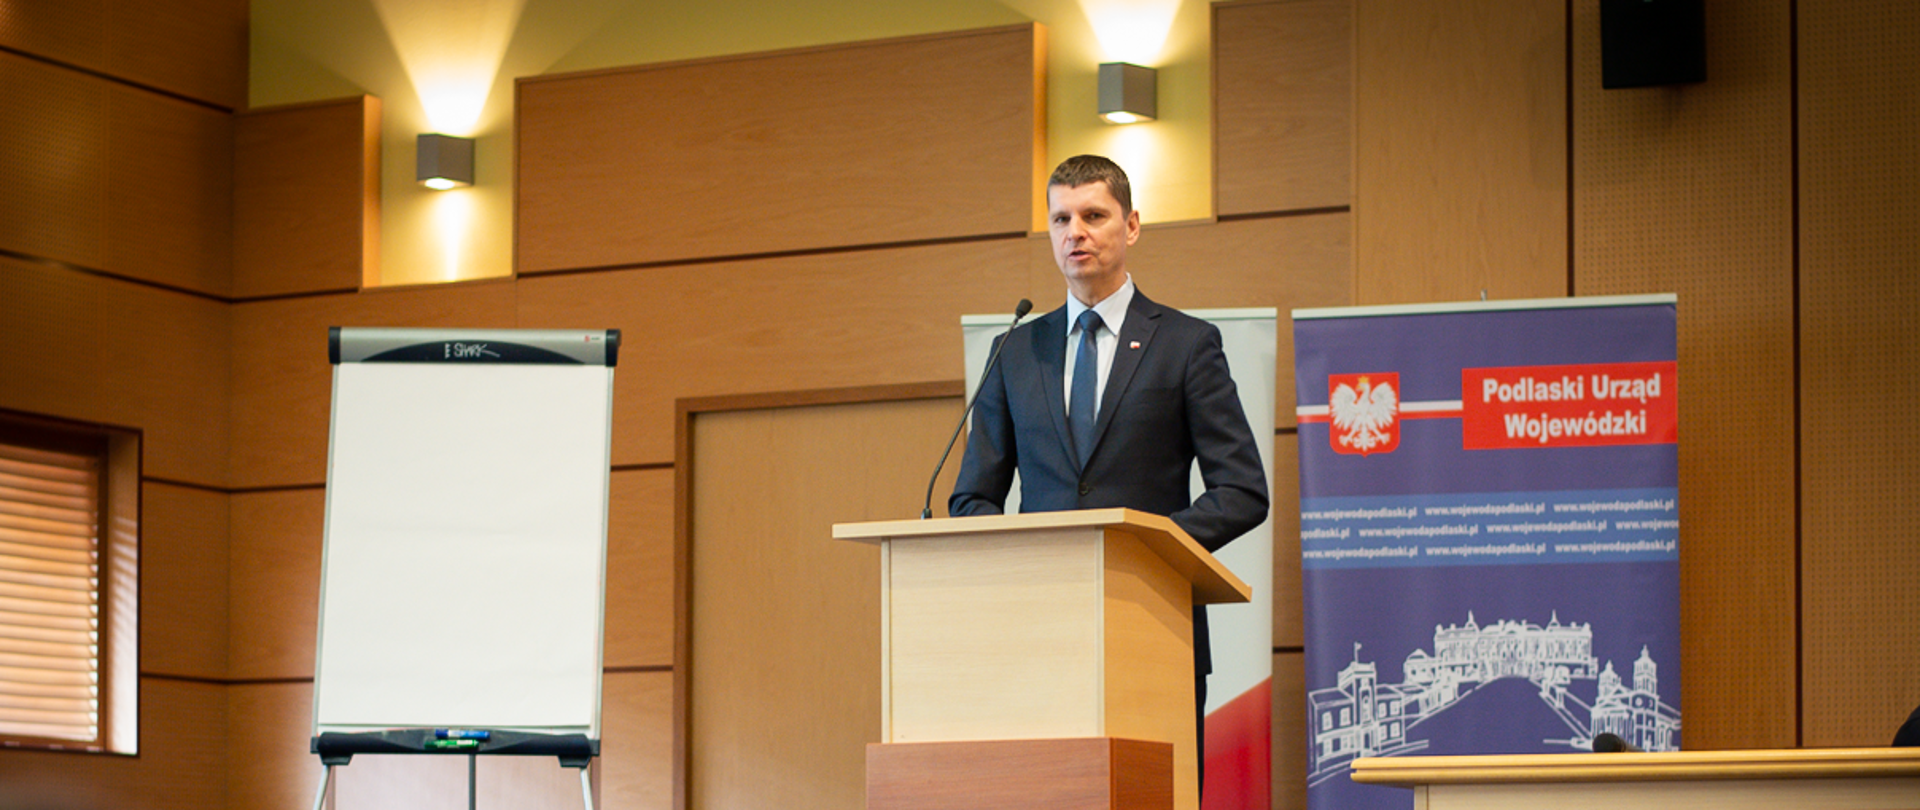 Minister Edukacji Narodowej, Dariusz Piontkowski stoi przy mównicy